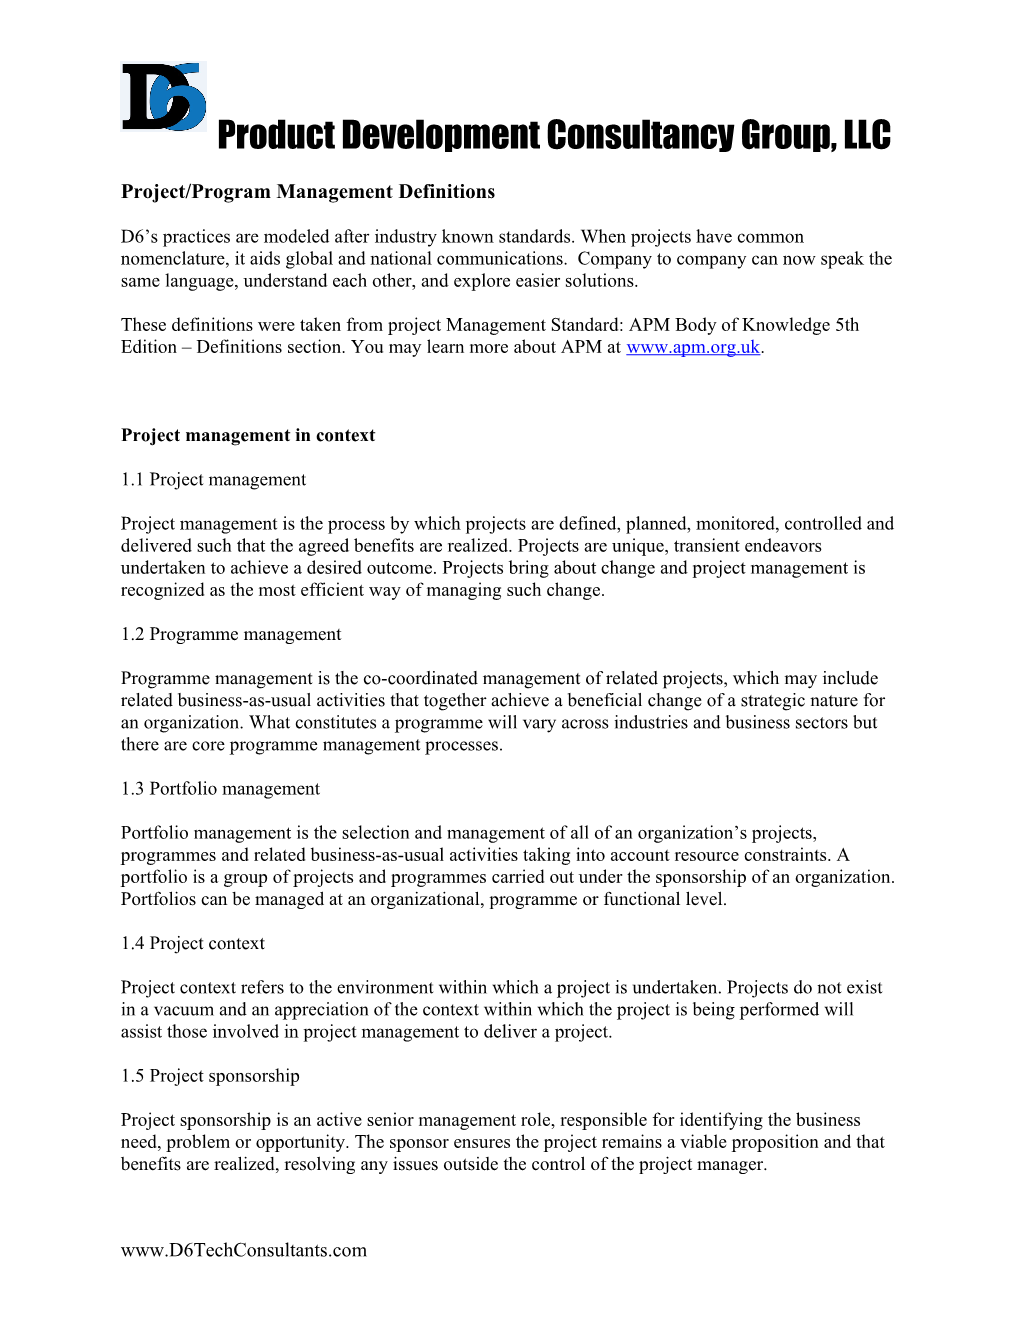 Project/Program Management Definitions